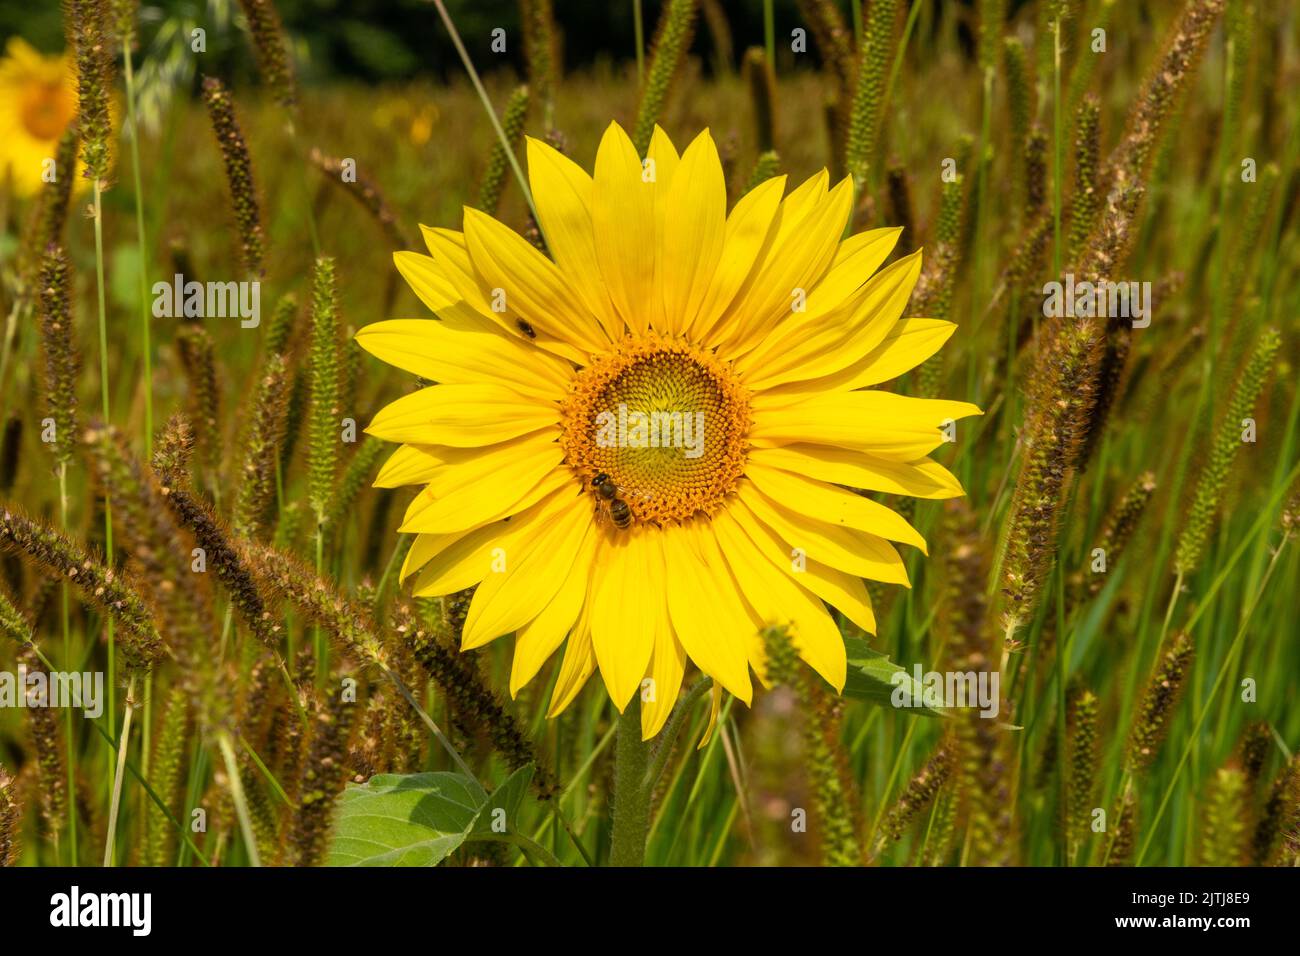 Girasol en el campo de hierba foxtail Foto de stock